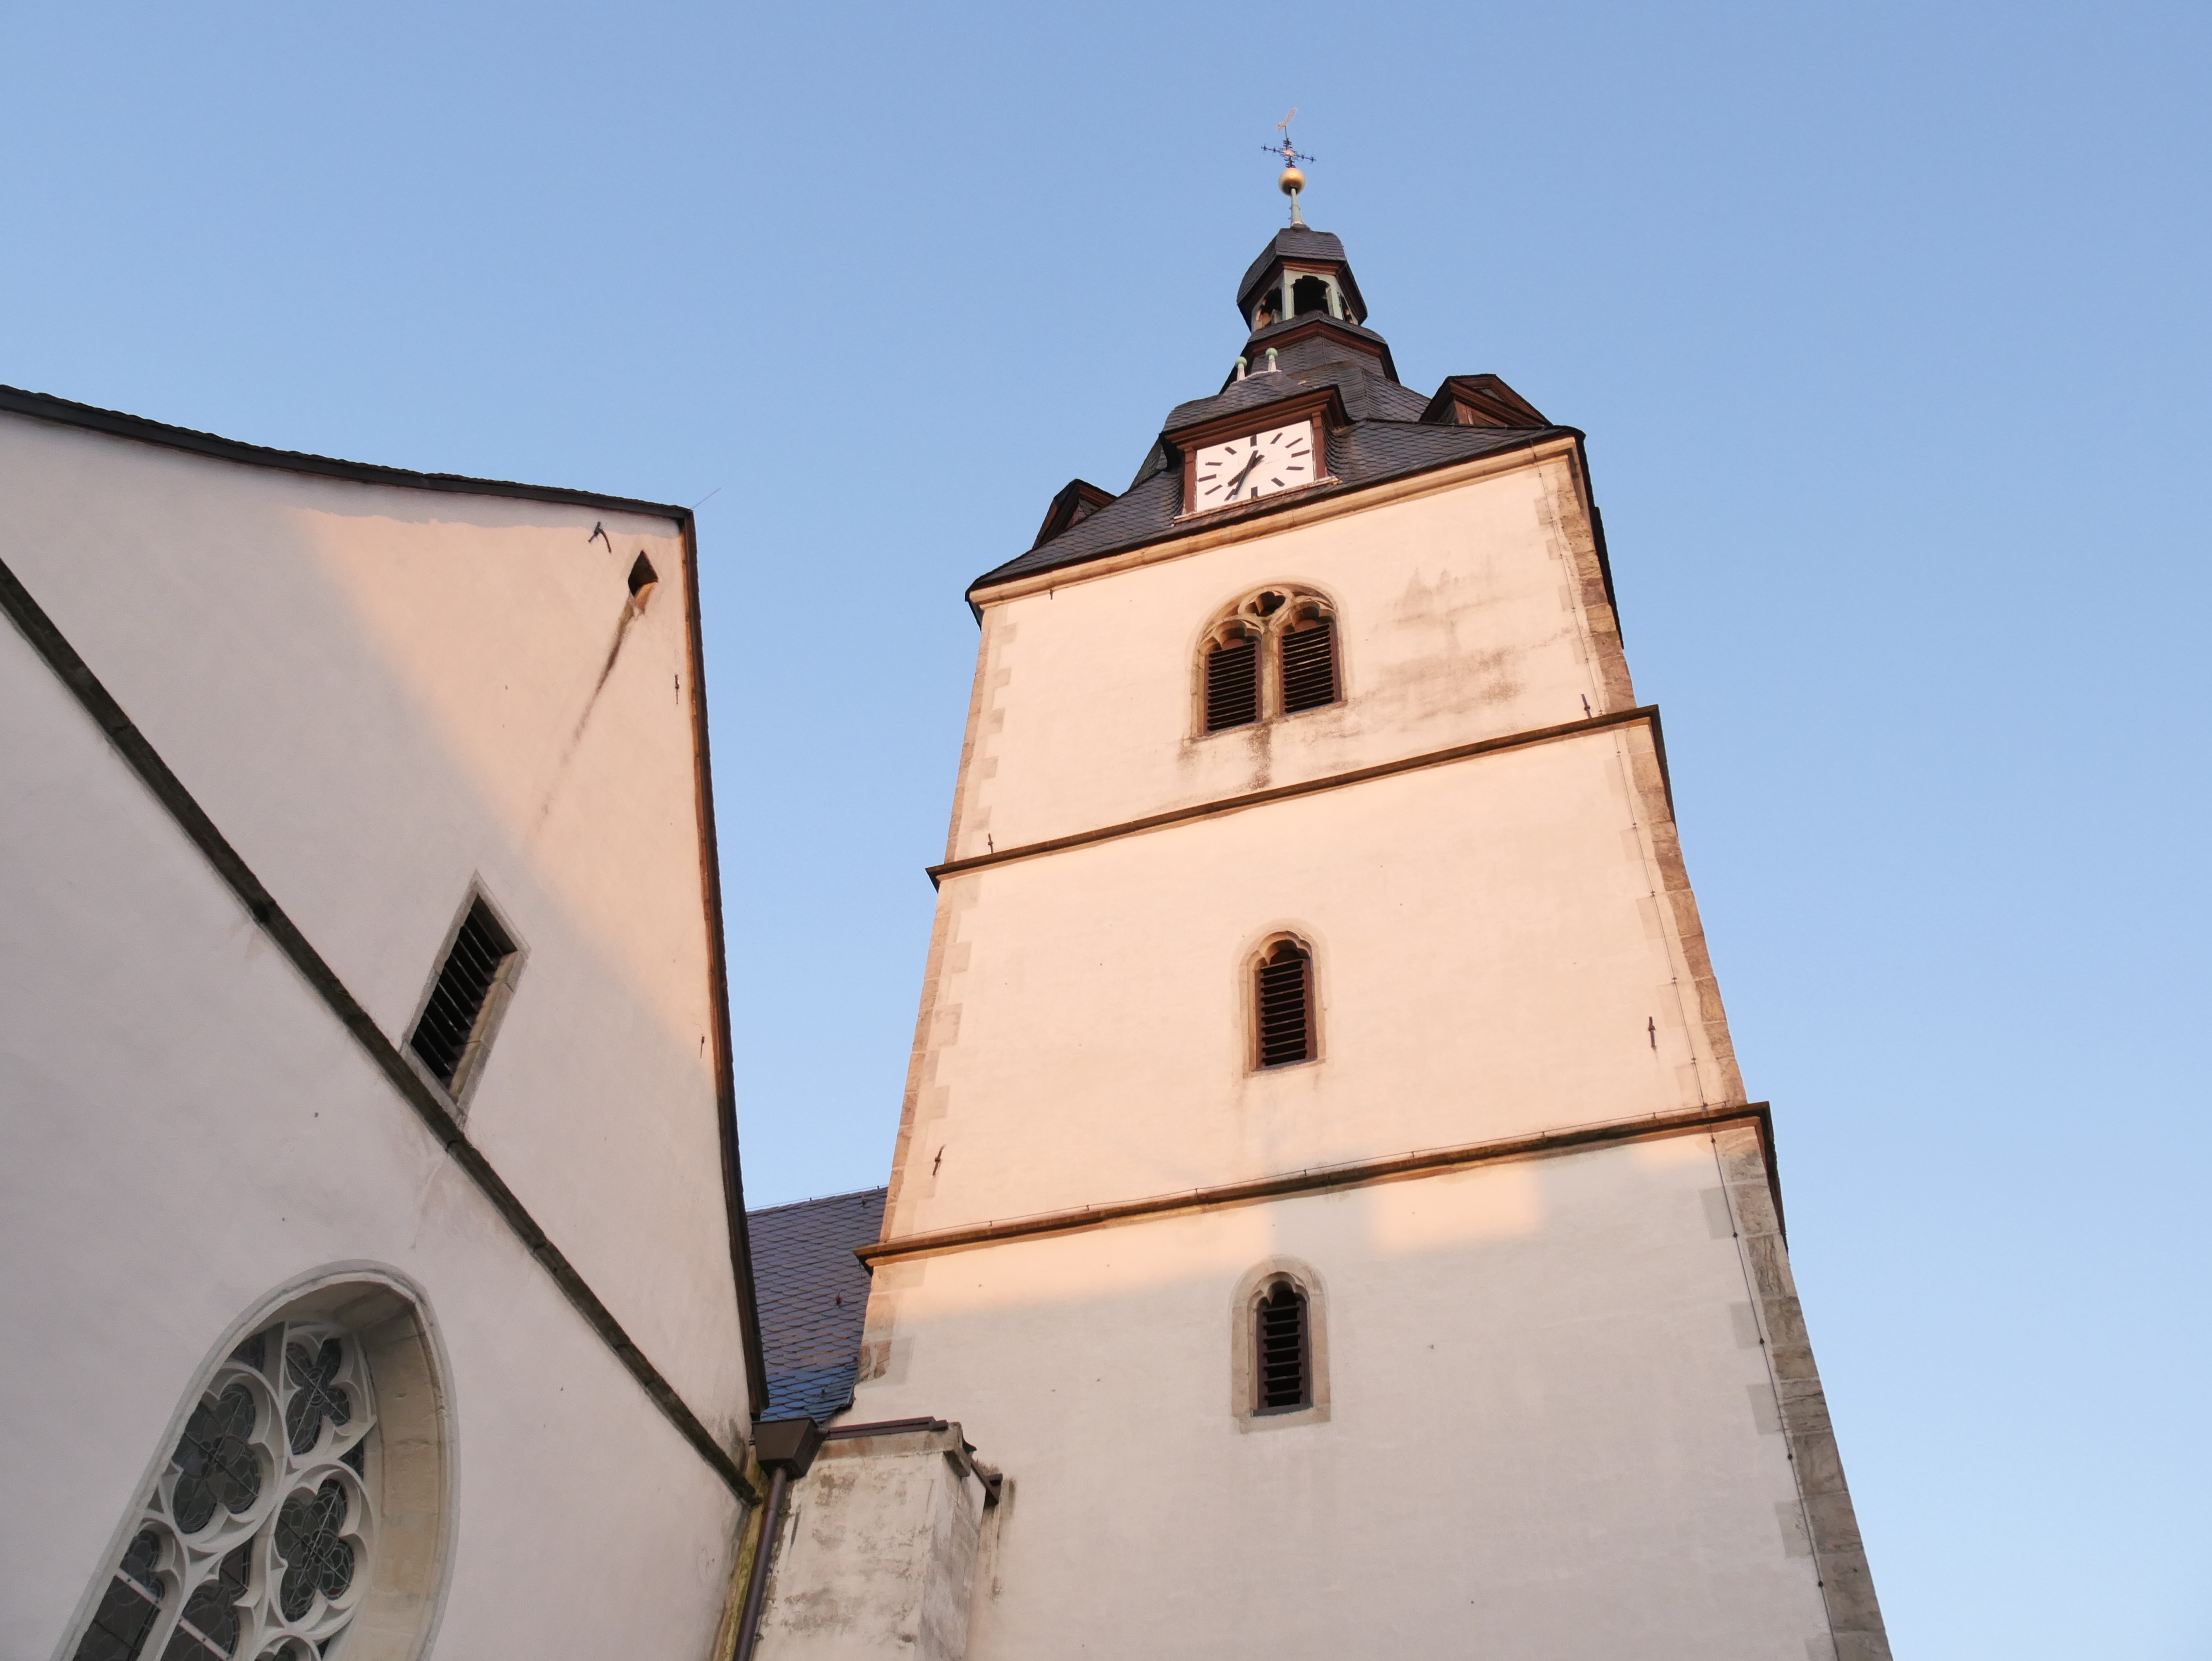 Erlöserkirche am Markt – Evangelisch-reformierte Kirchengemeinde Detmold-Ost, Marktplatz 6 in Detmold